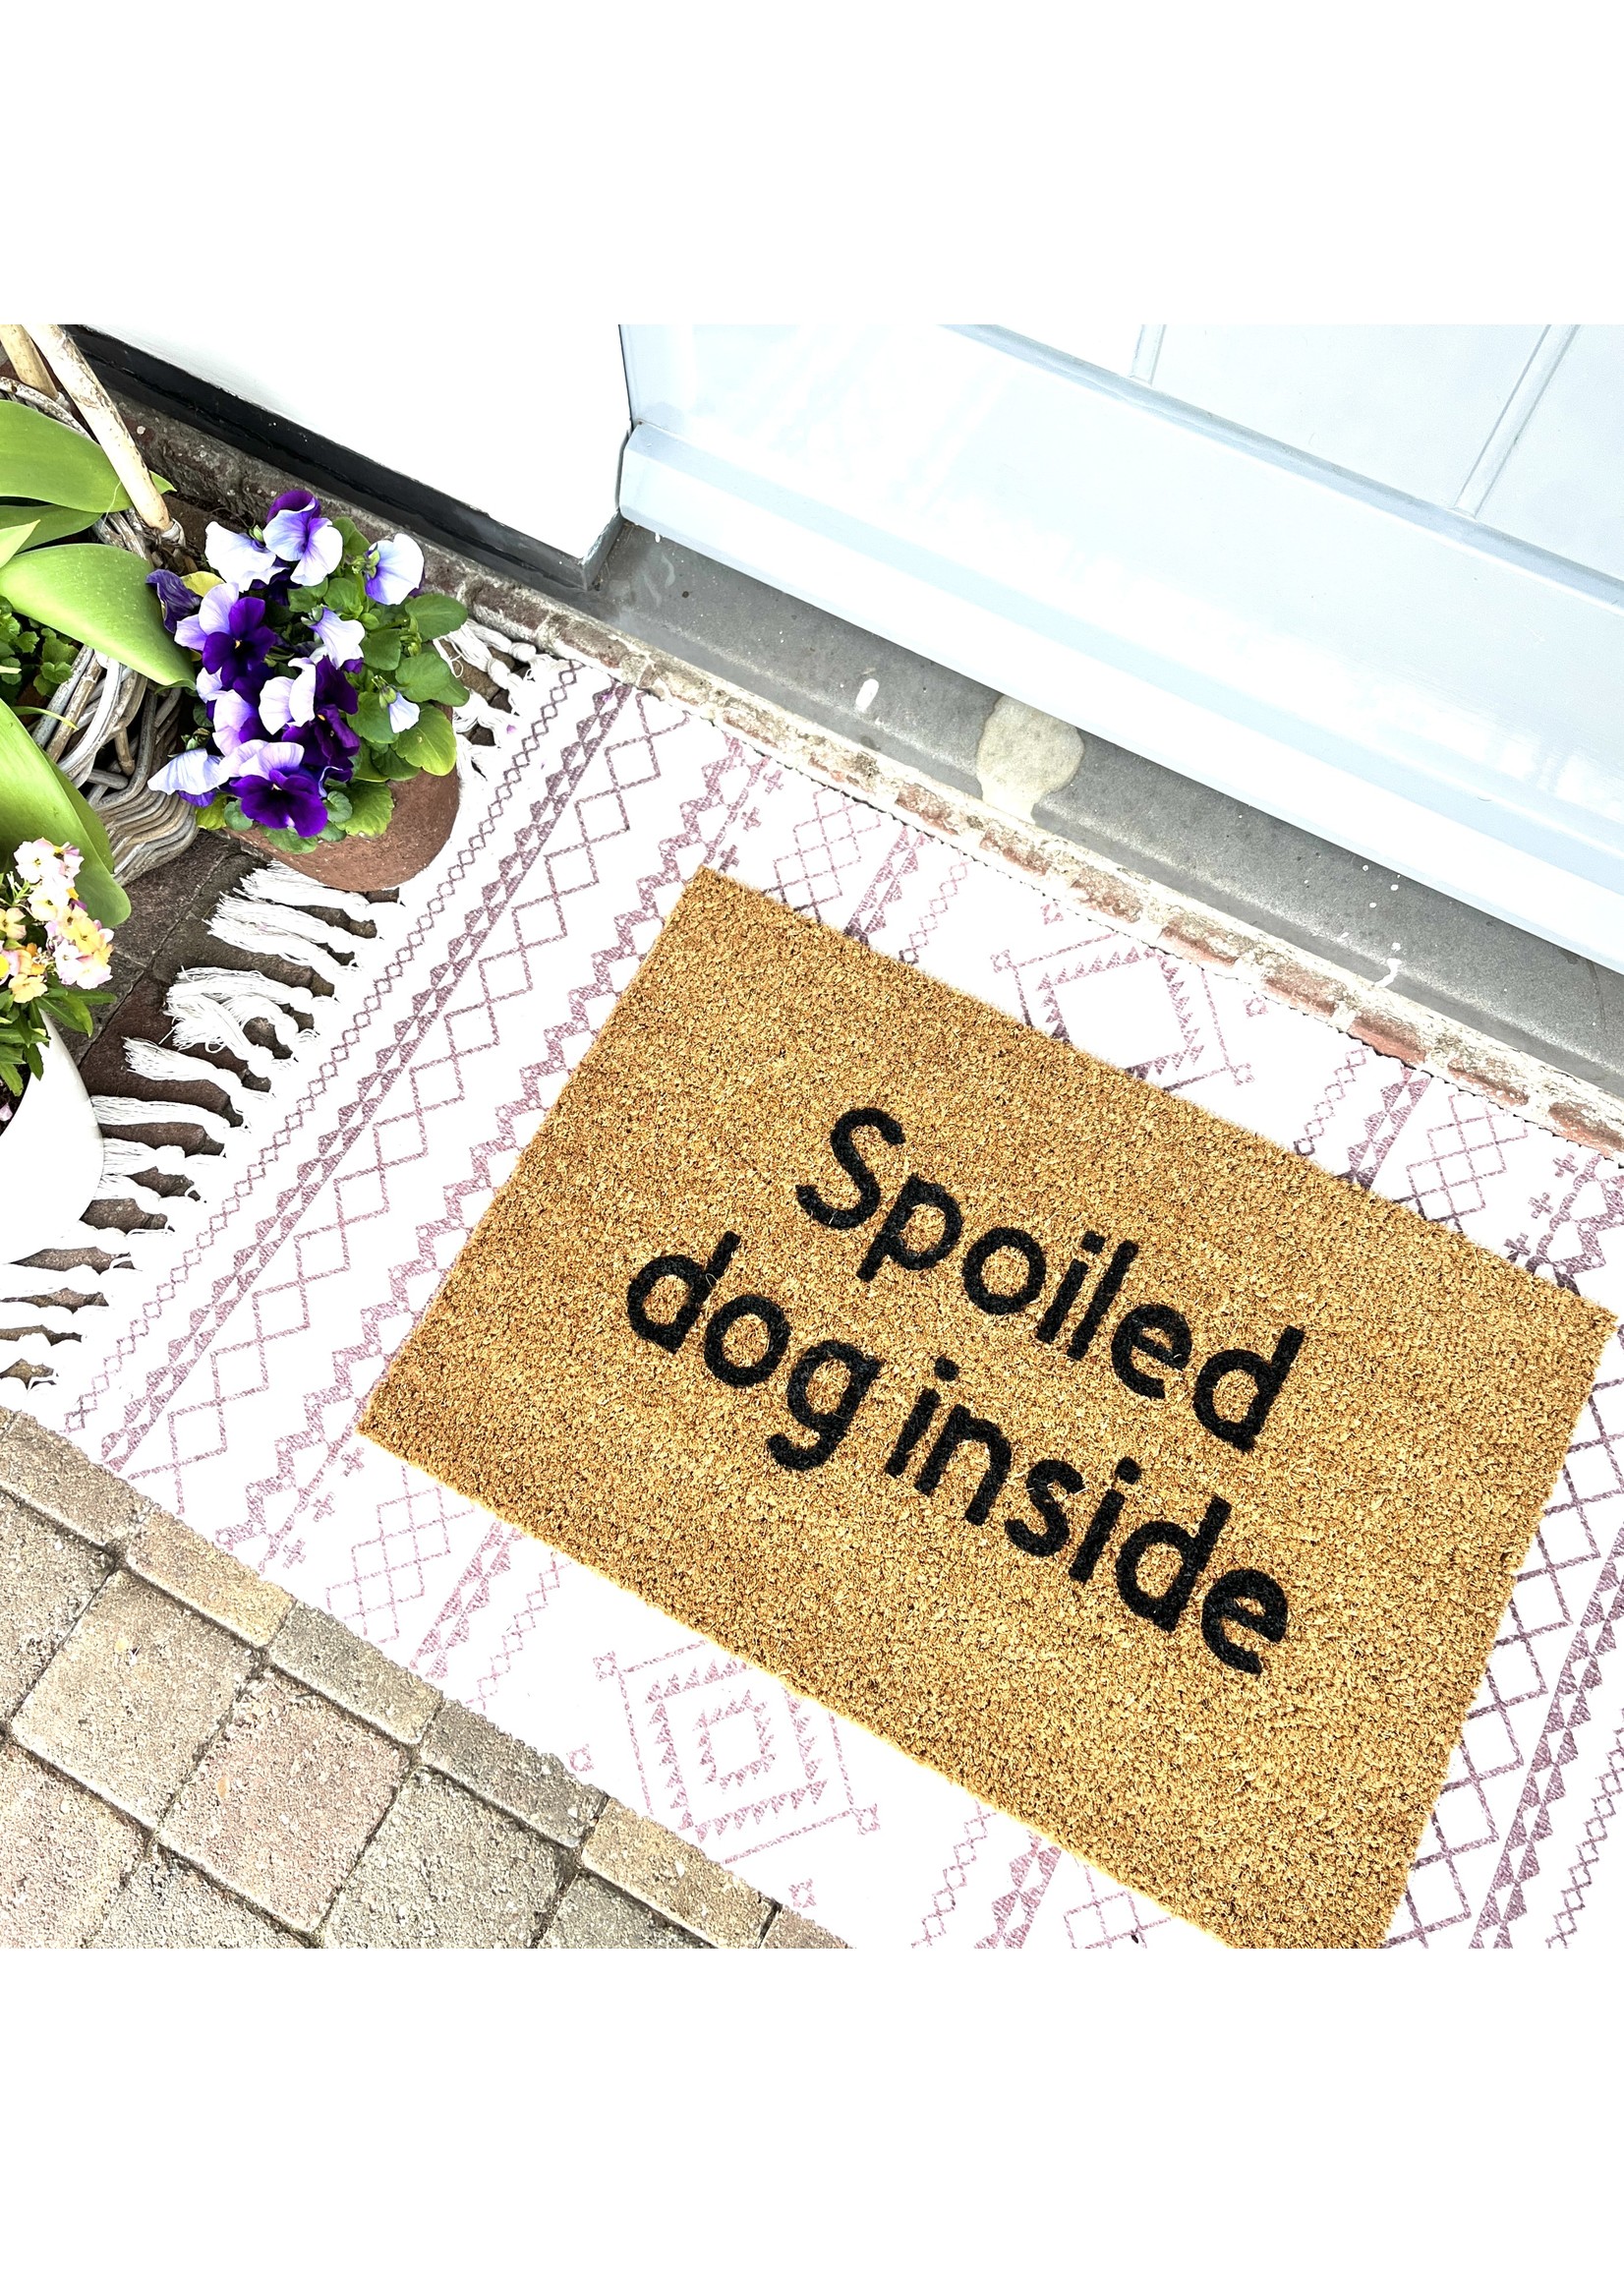 Spoiled dog inside doormat